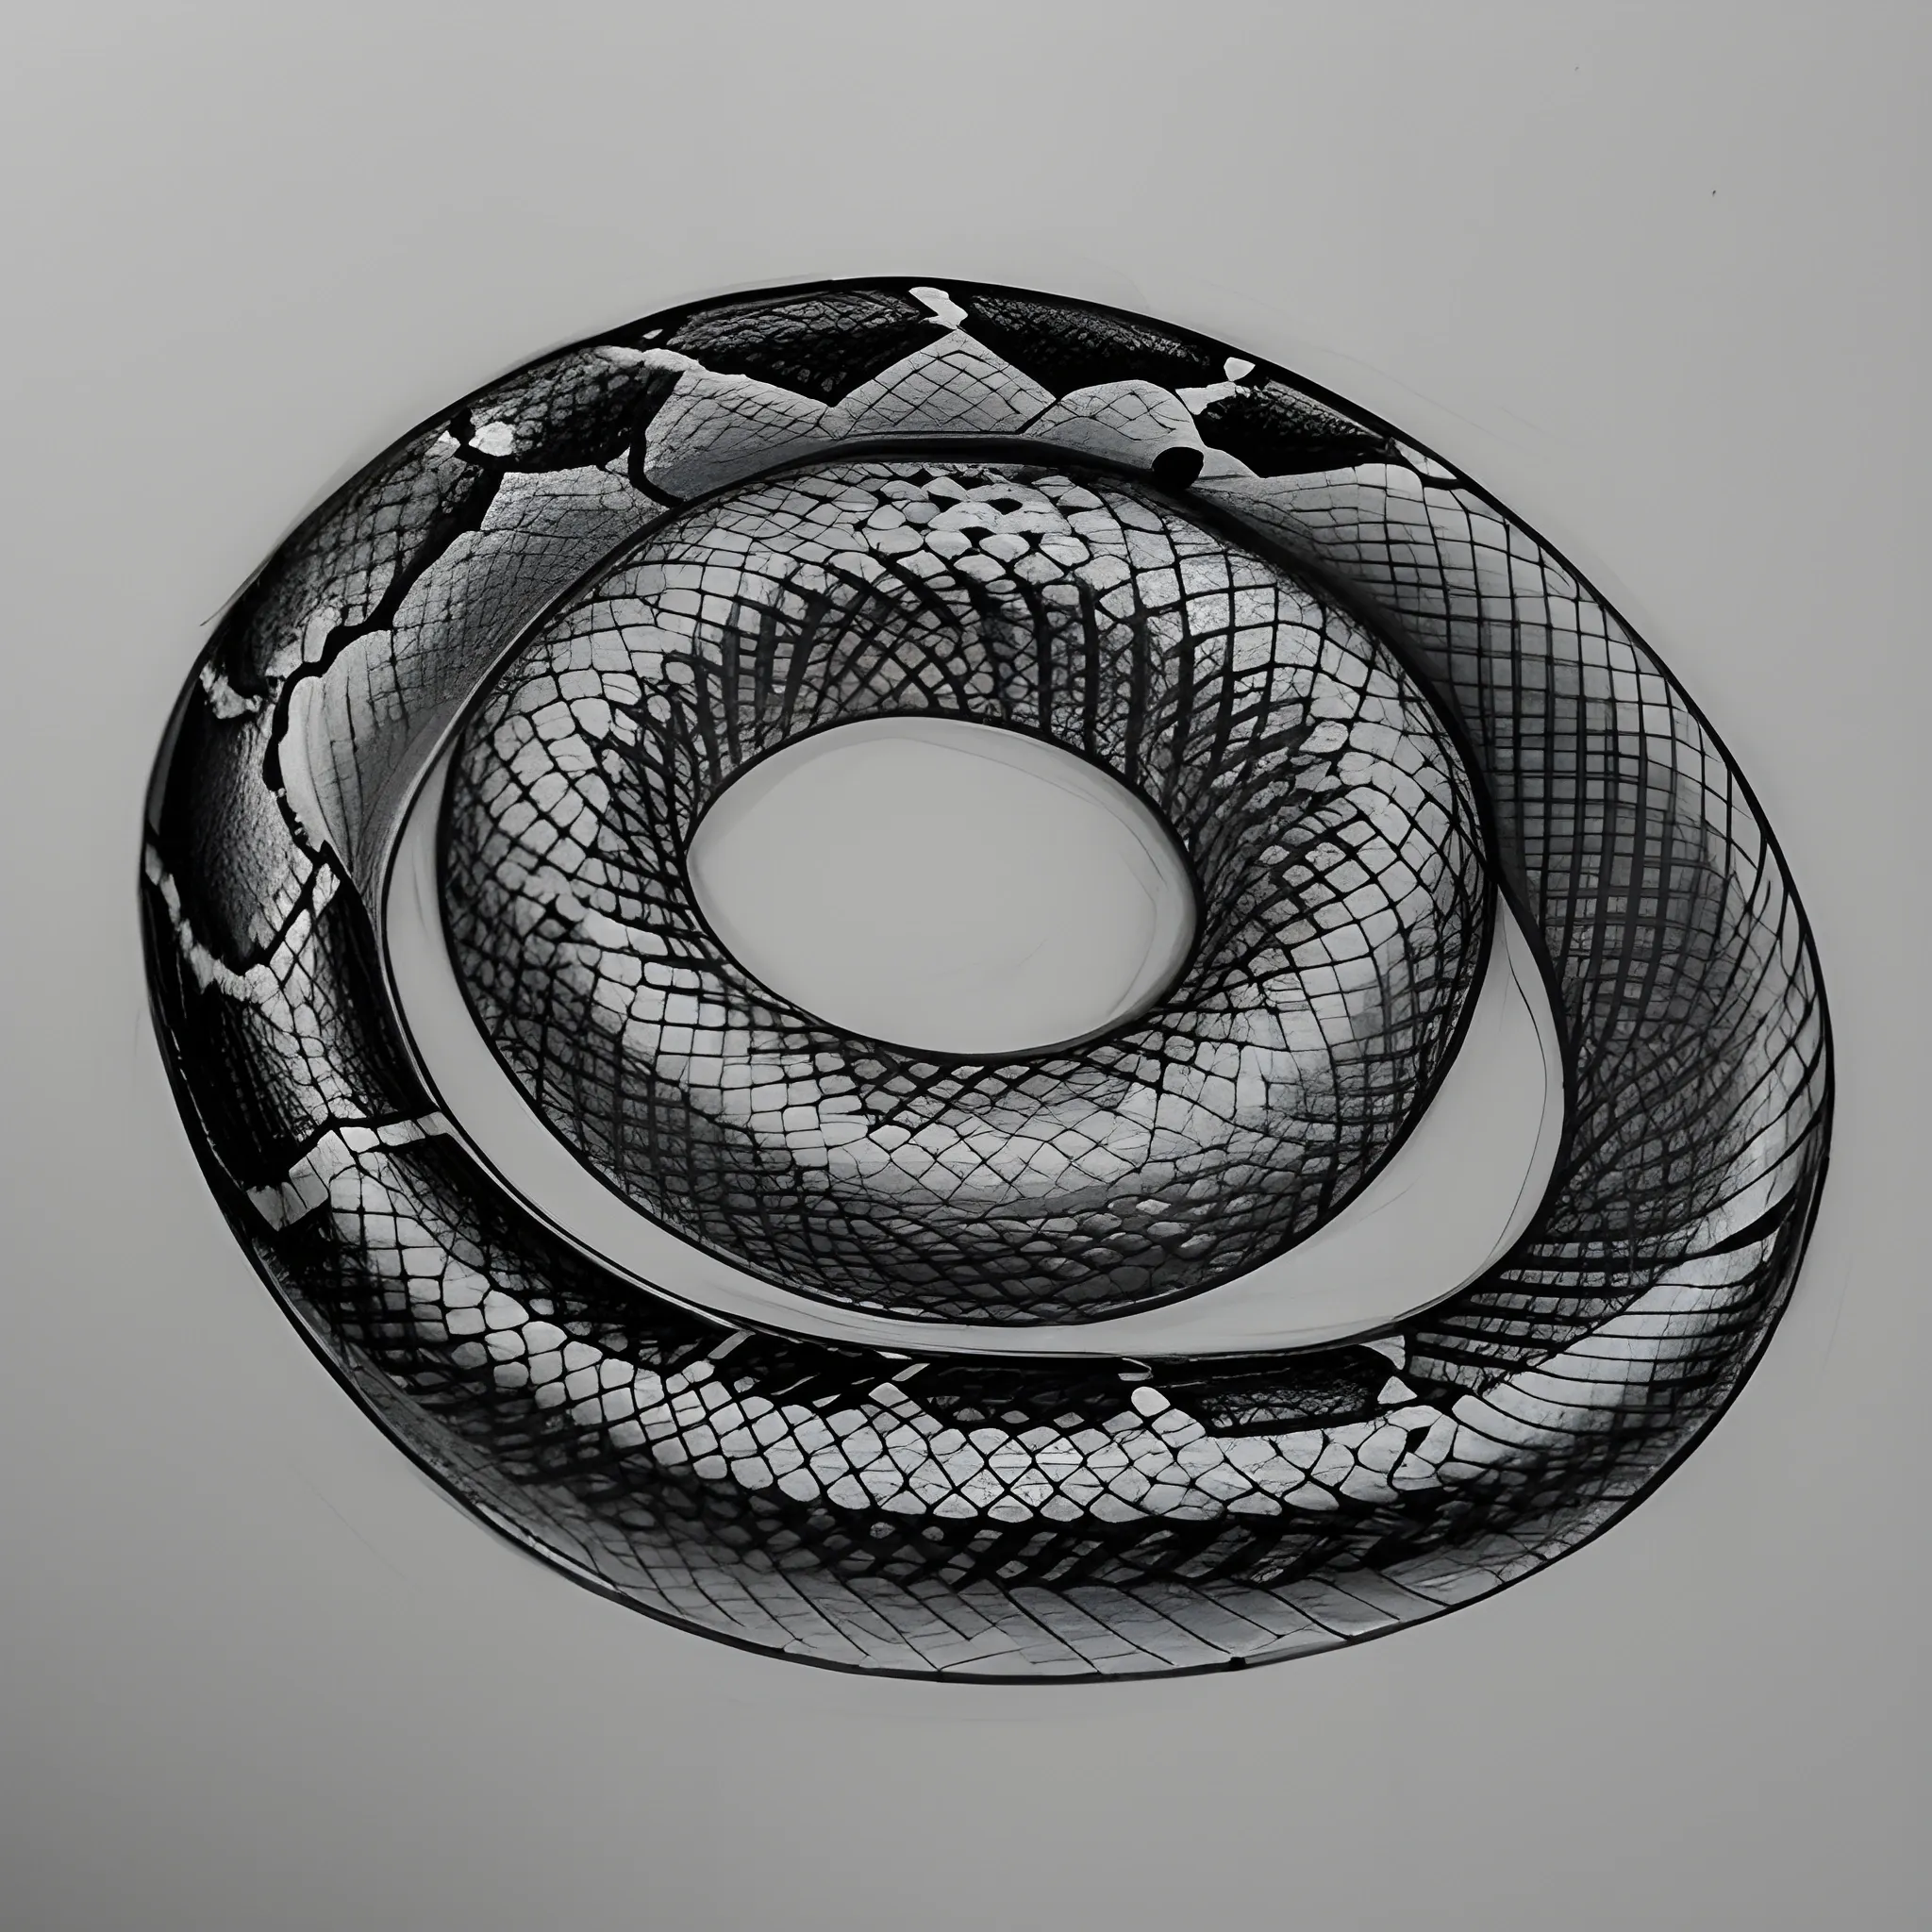 Cobra Snake Drawing Images - Free Download on Freepik